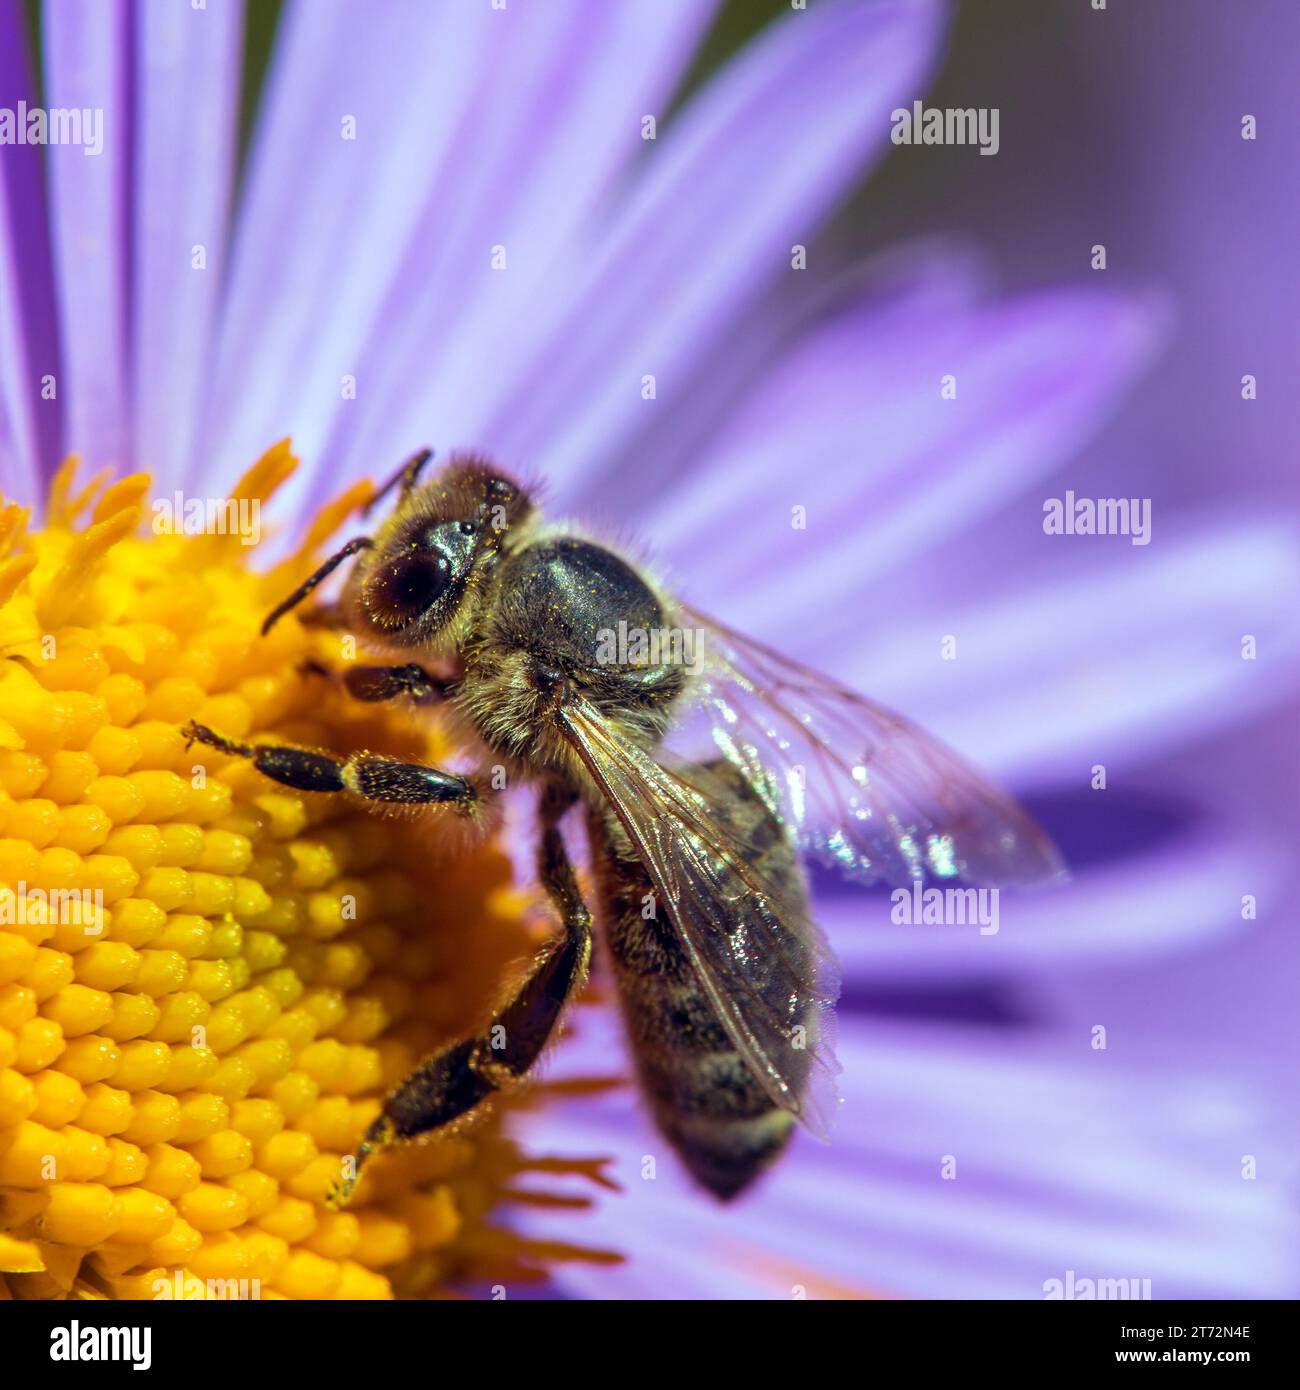 Abeille ou abeille en latin APIs mellifera, abeille européenne ou occidentale assise sur la fleur bleue jaune violette ou violette Banque D'Images